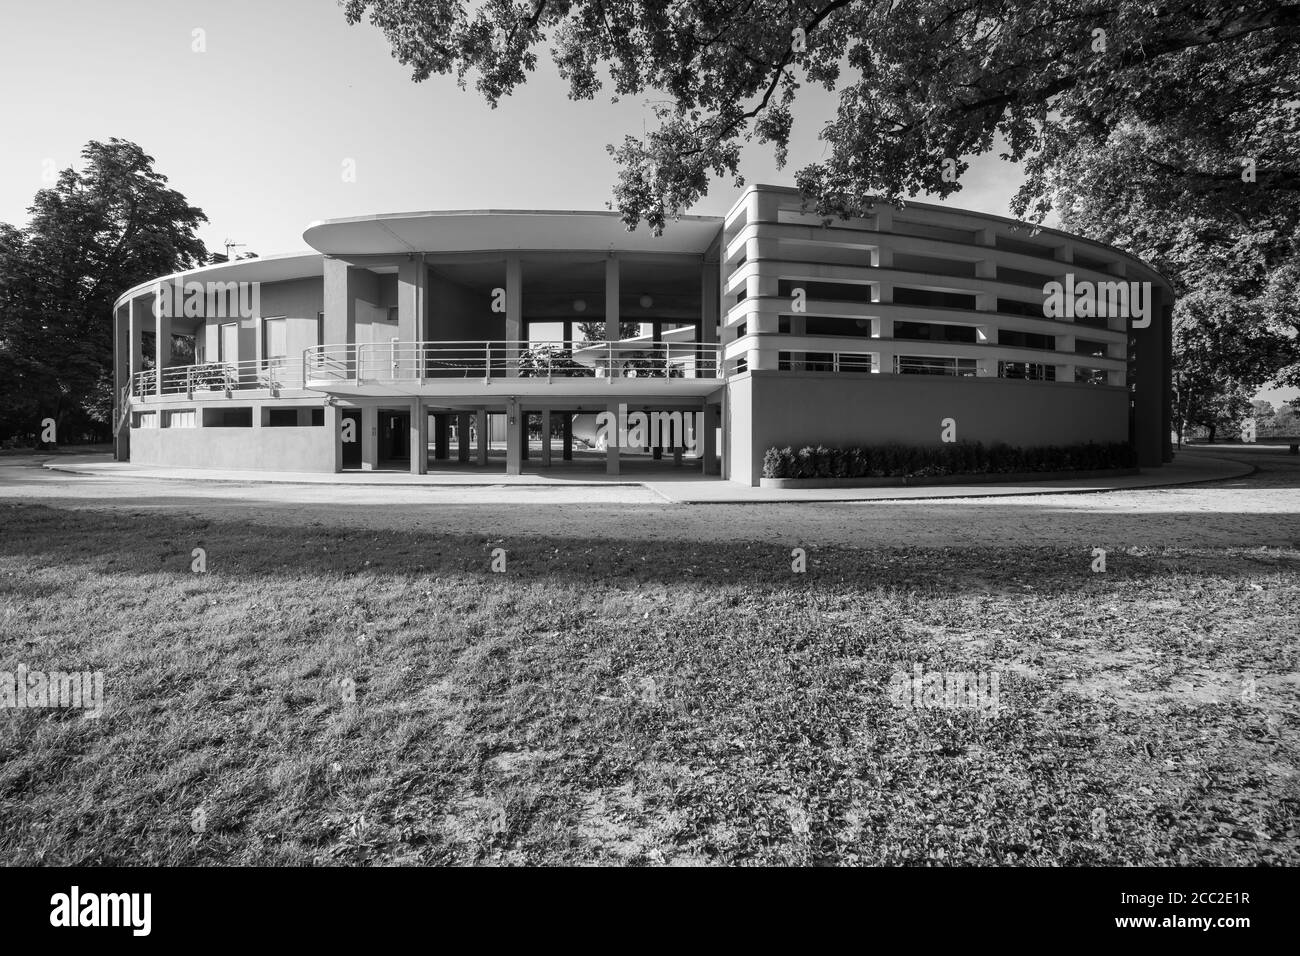 Colonia Farinacci, Cremona, Italia, 1936, Carlo Gaudenzi, architettura modernista/futurista italiana dell'era fascista, fotografia architettonica in B&W. Foto Stock